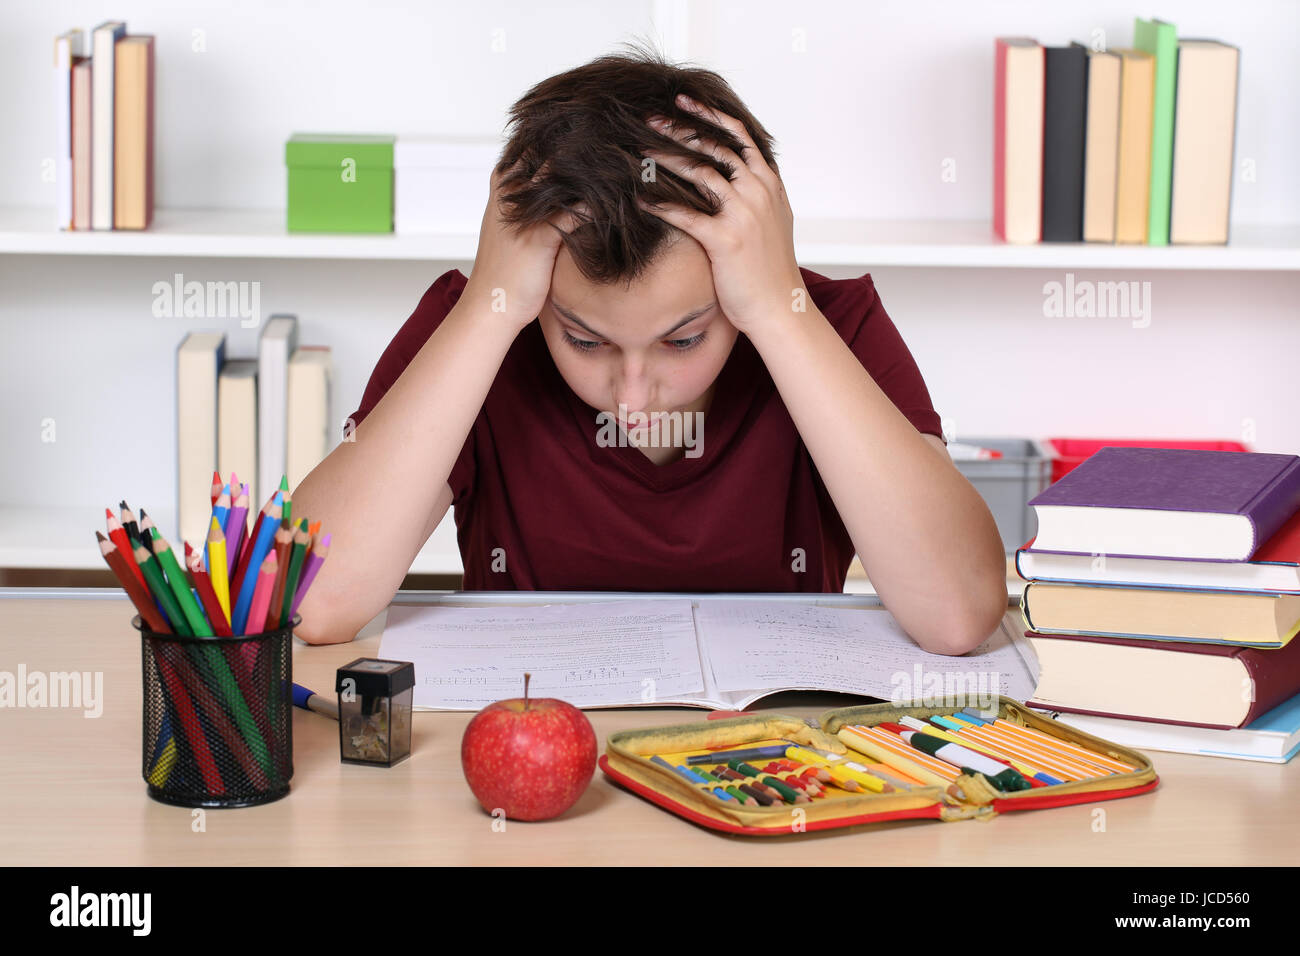 Ein junger Schüler verzweifelt bei den Hausaufgaben in der Schule Stock Photo